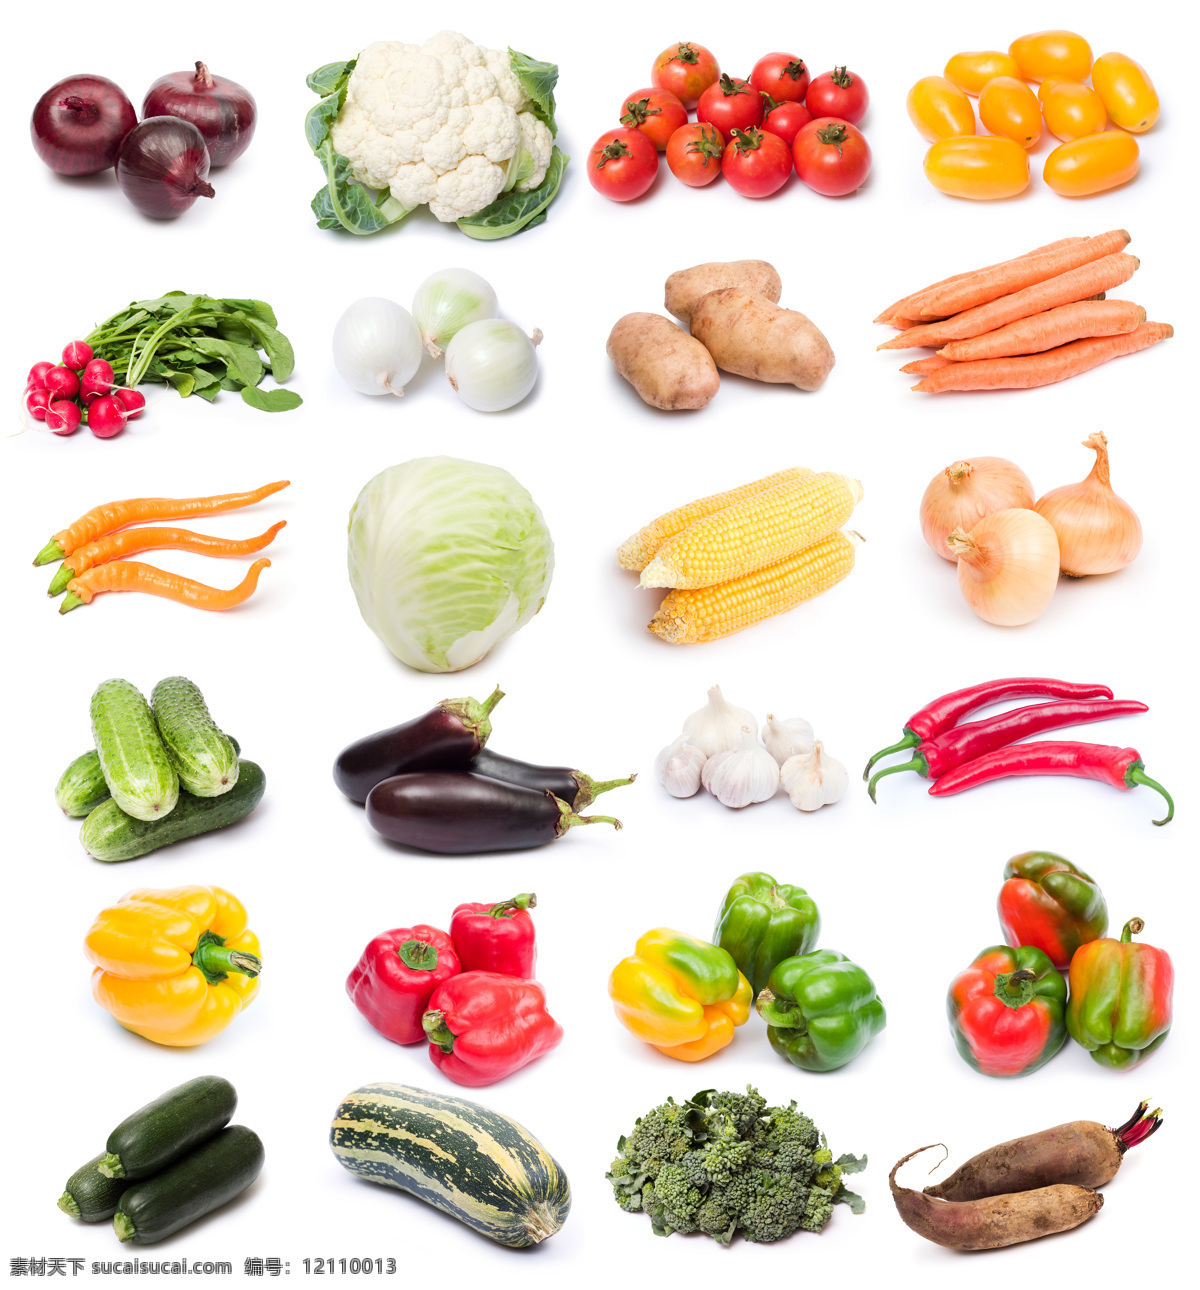 蔬菜高清图片 健康 蔬菜 高清 大全 新鲜蔬菜 果蔬 胡萝卜 茄子 大蒜 青椒